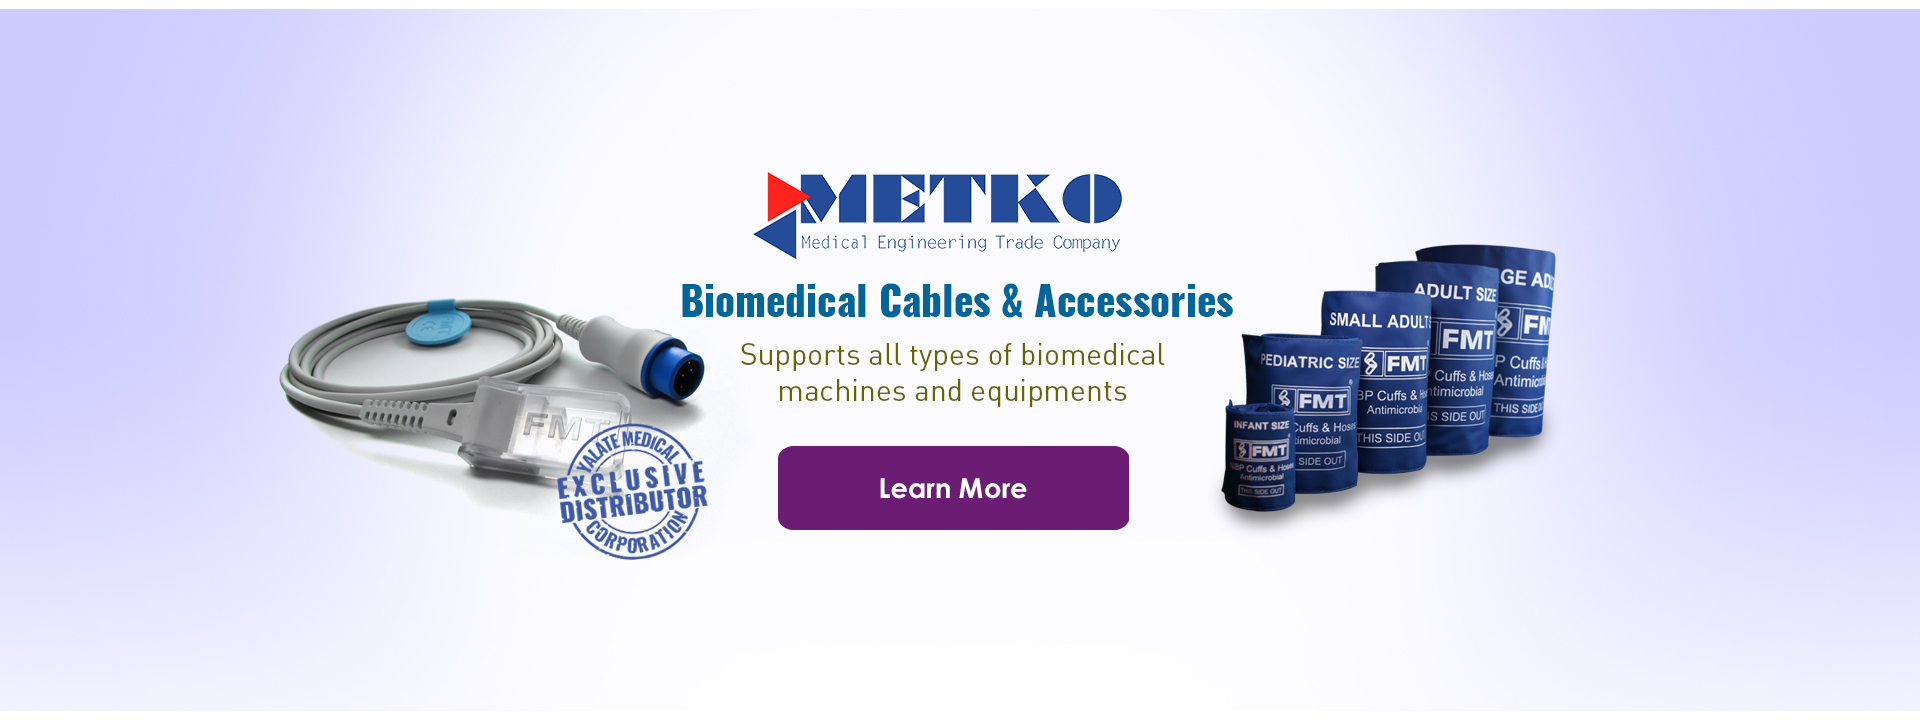 METKO – BIOMEDICAL CABLES